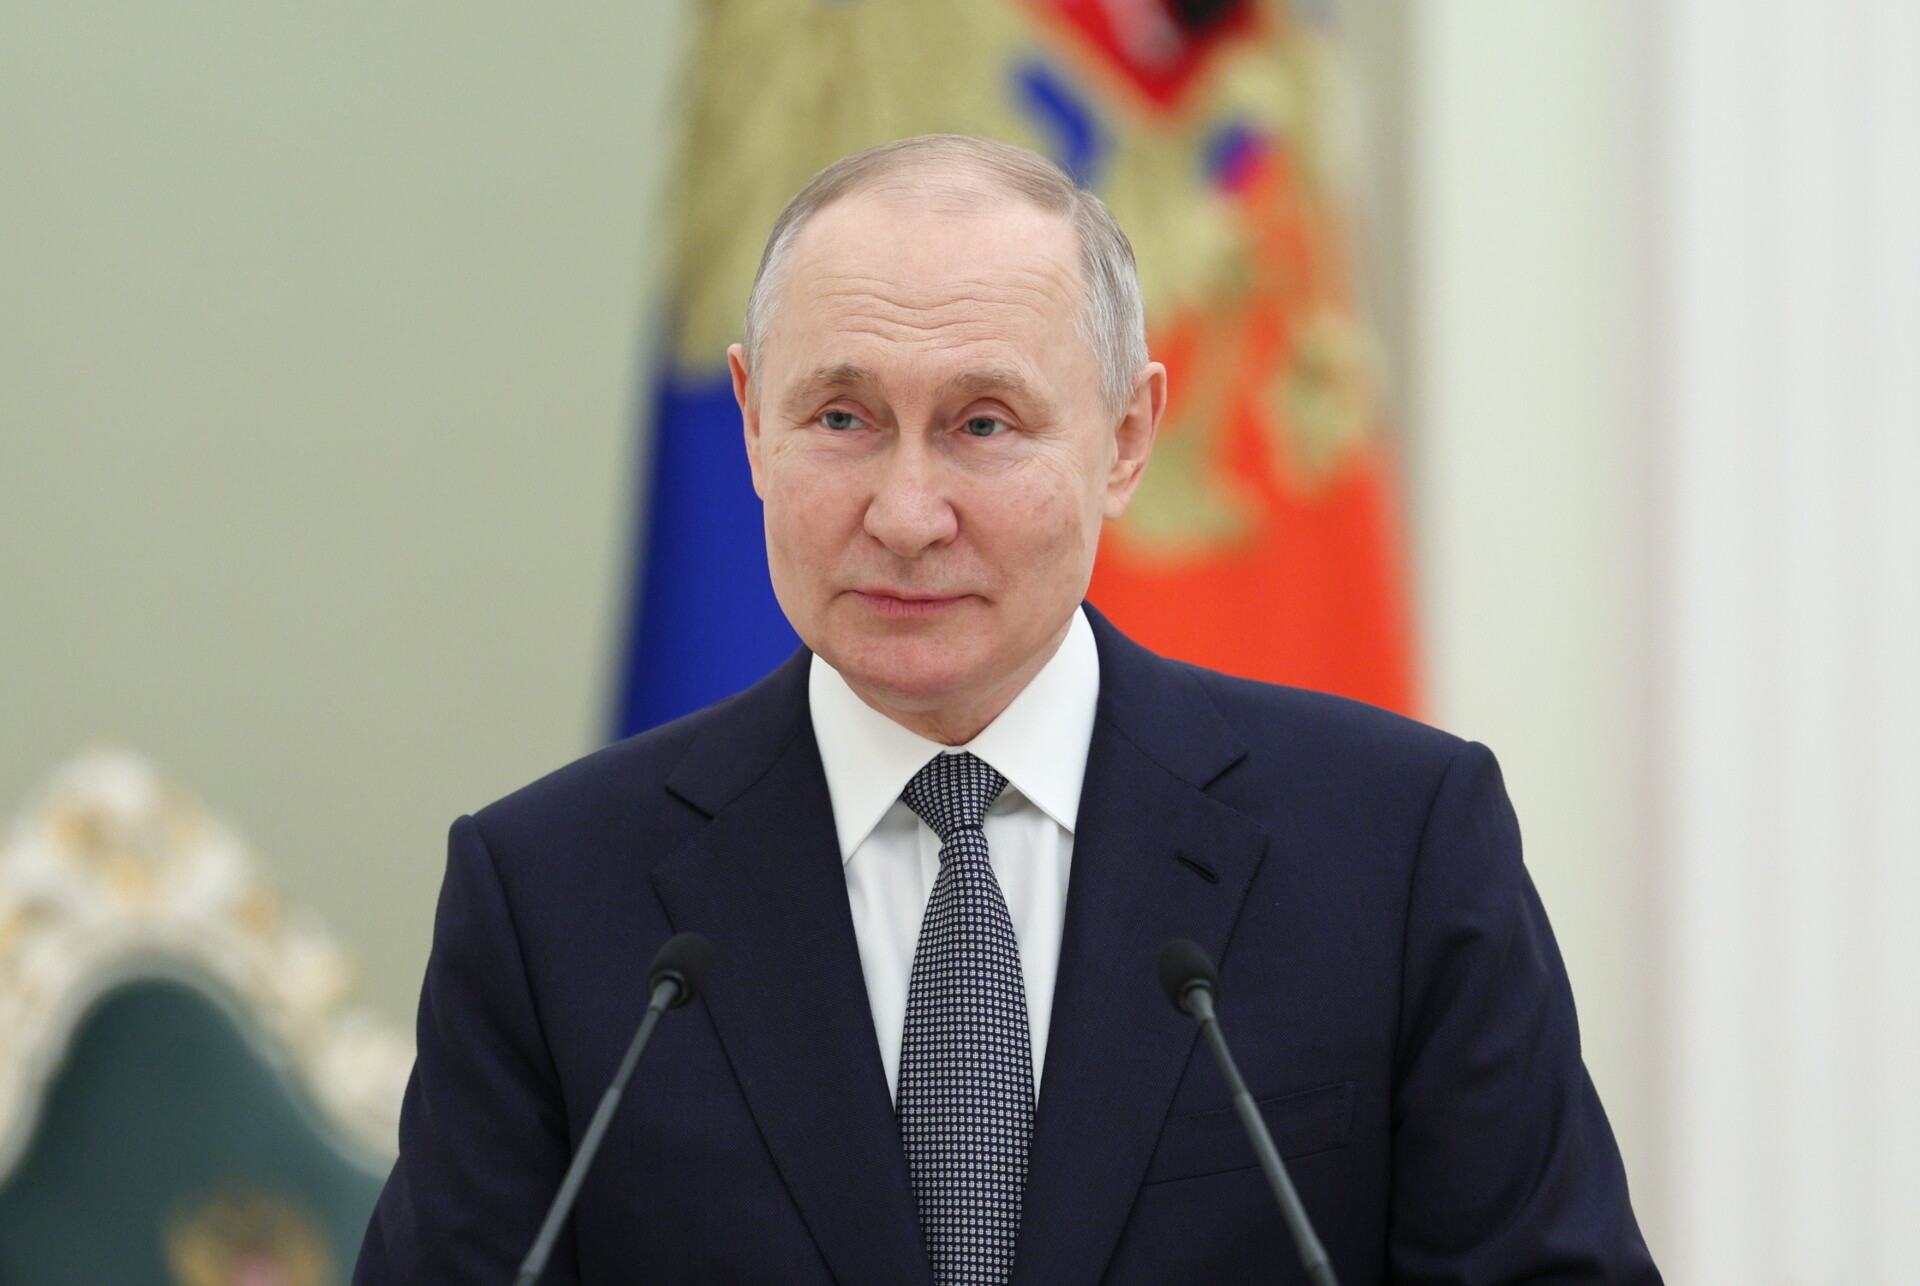 Ο Βλαβτιμίρ Πούτιν © EPA/GAVRIIL GRIGOROV/SPUTNIK/KREMLIN POOL MANDATORY CREDIT